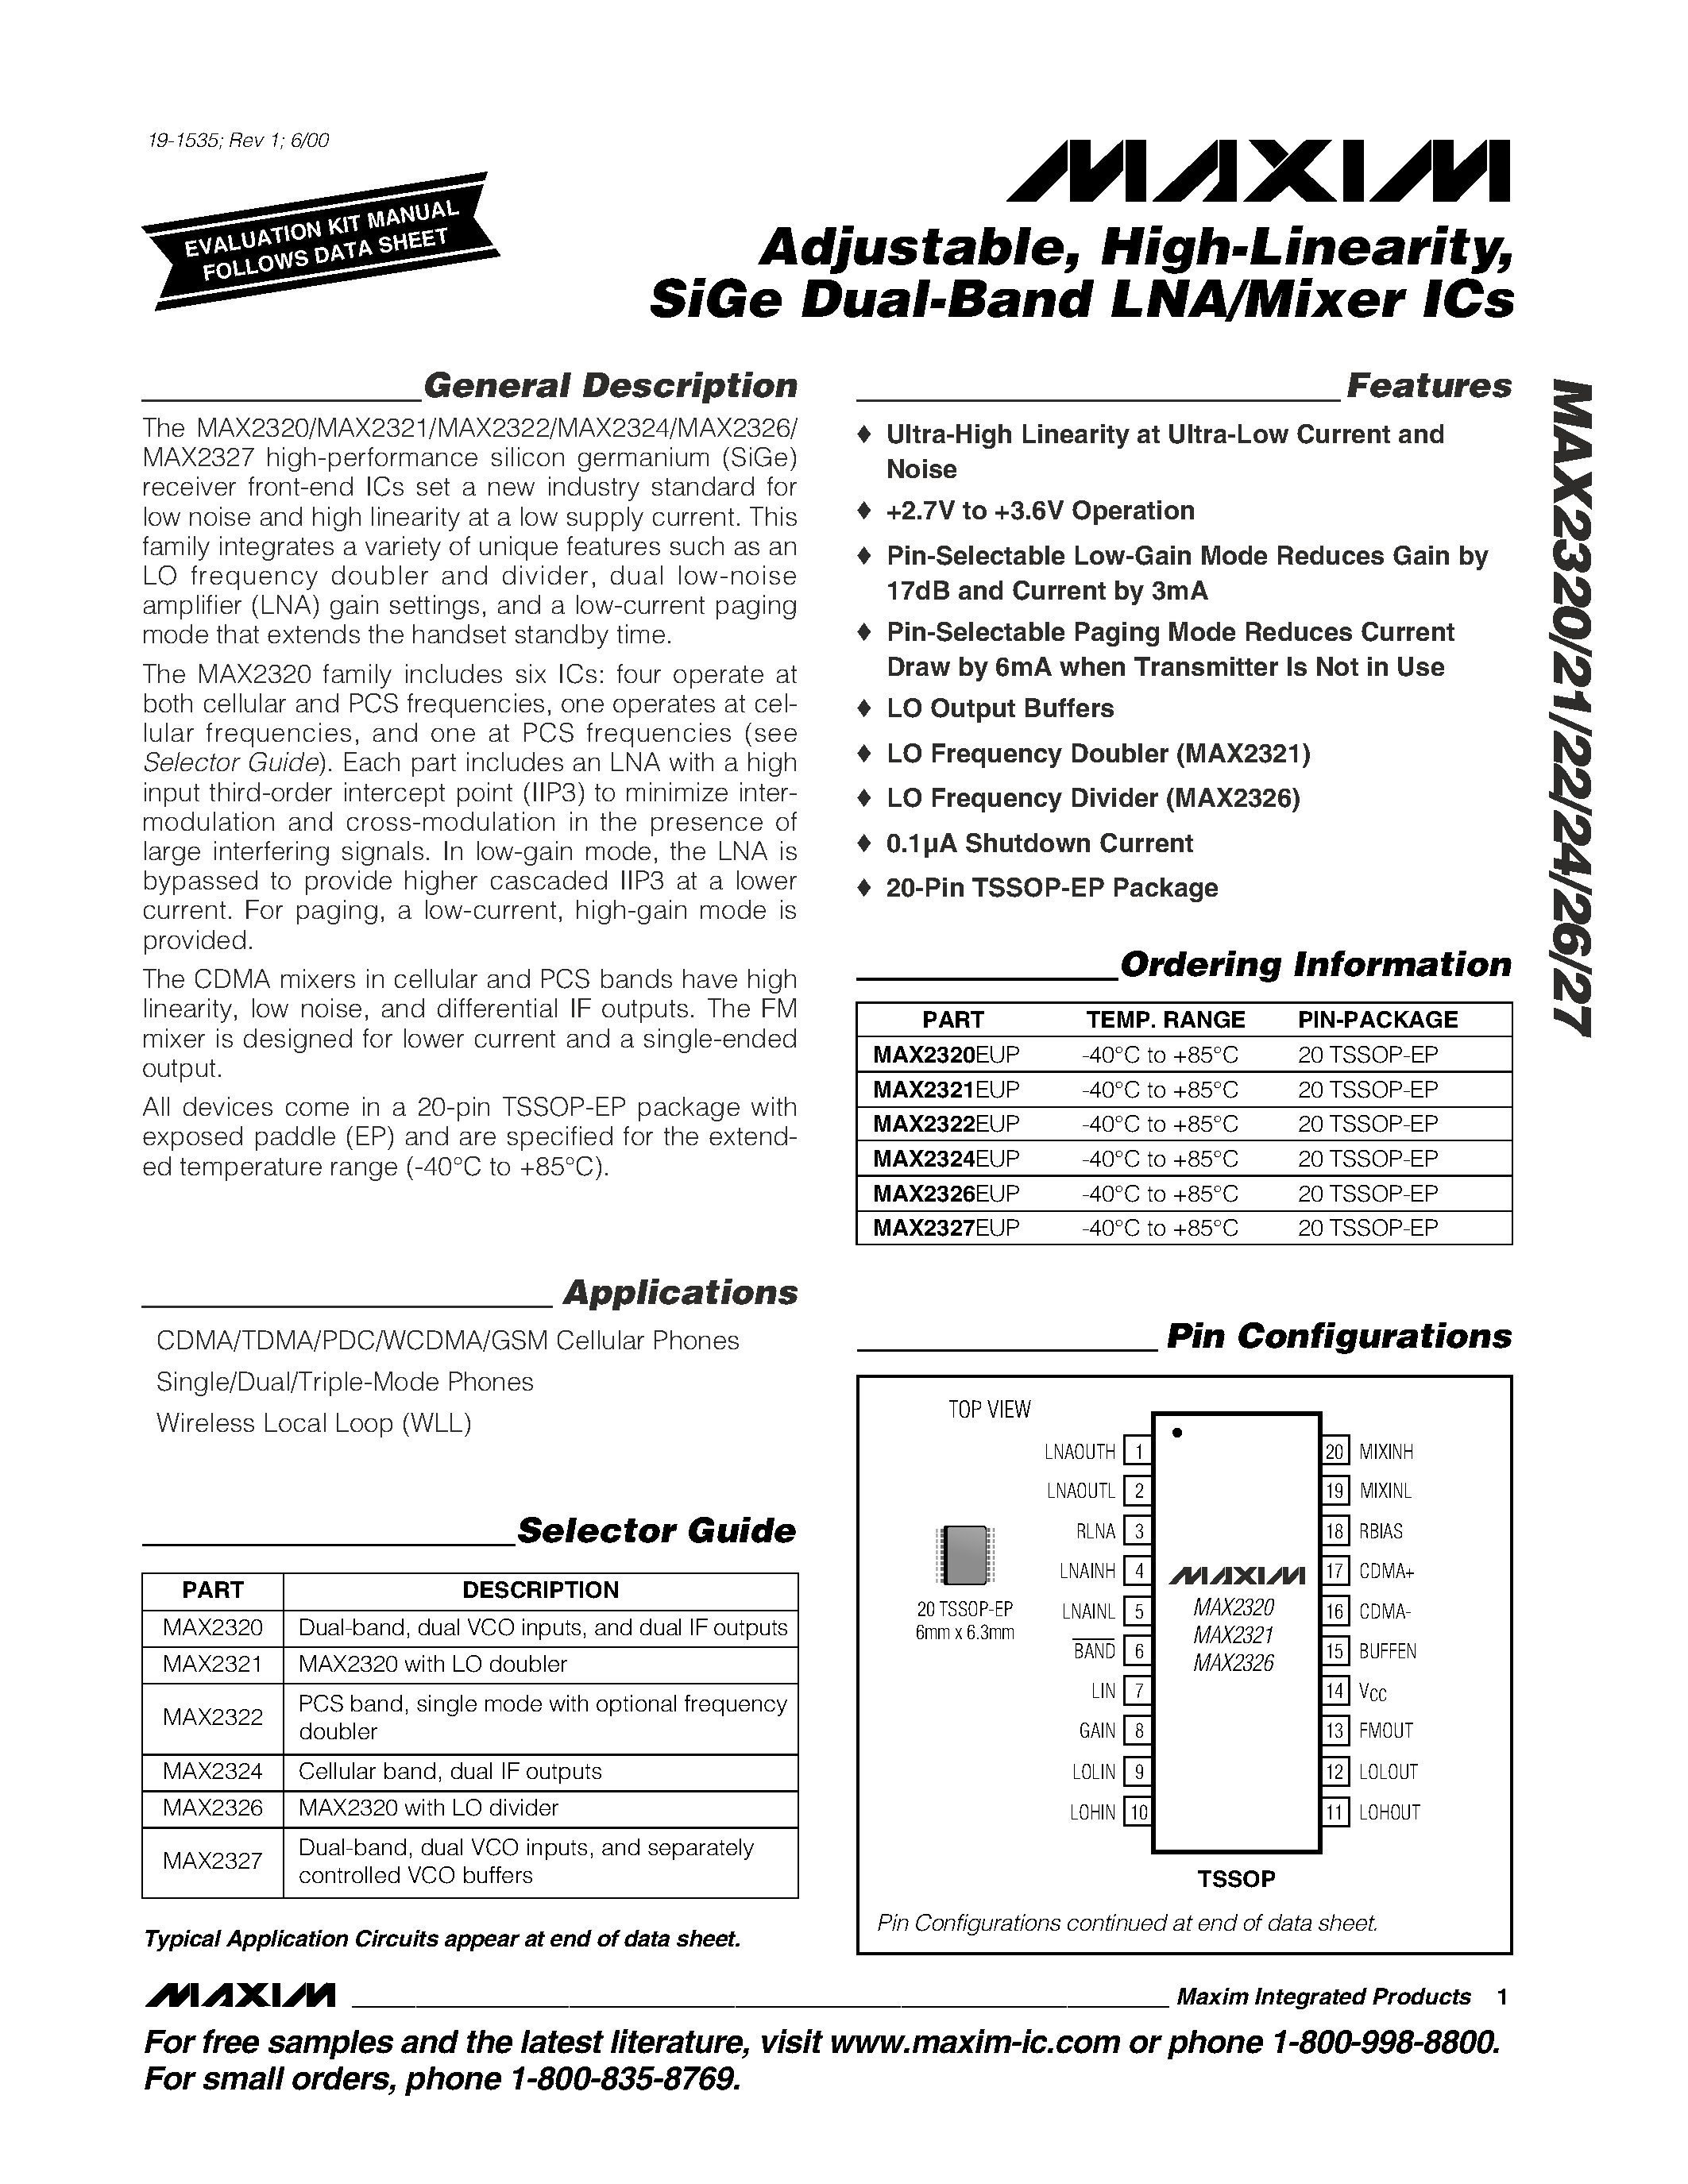 Даташит MAX2322 - Adjustable / High-Linearity / SiGe Dual-Band LNA/Mixer ICs страница 1